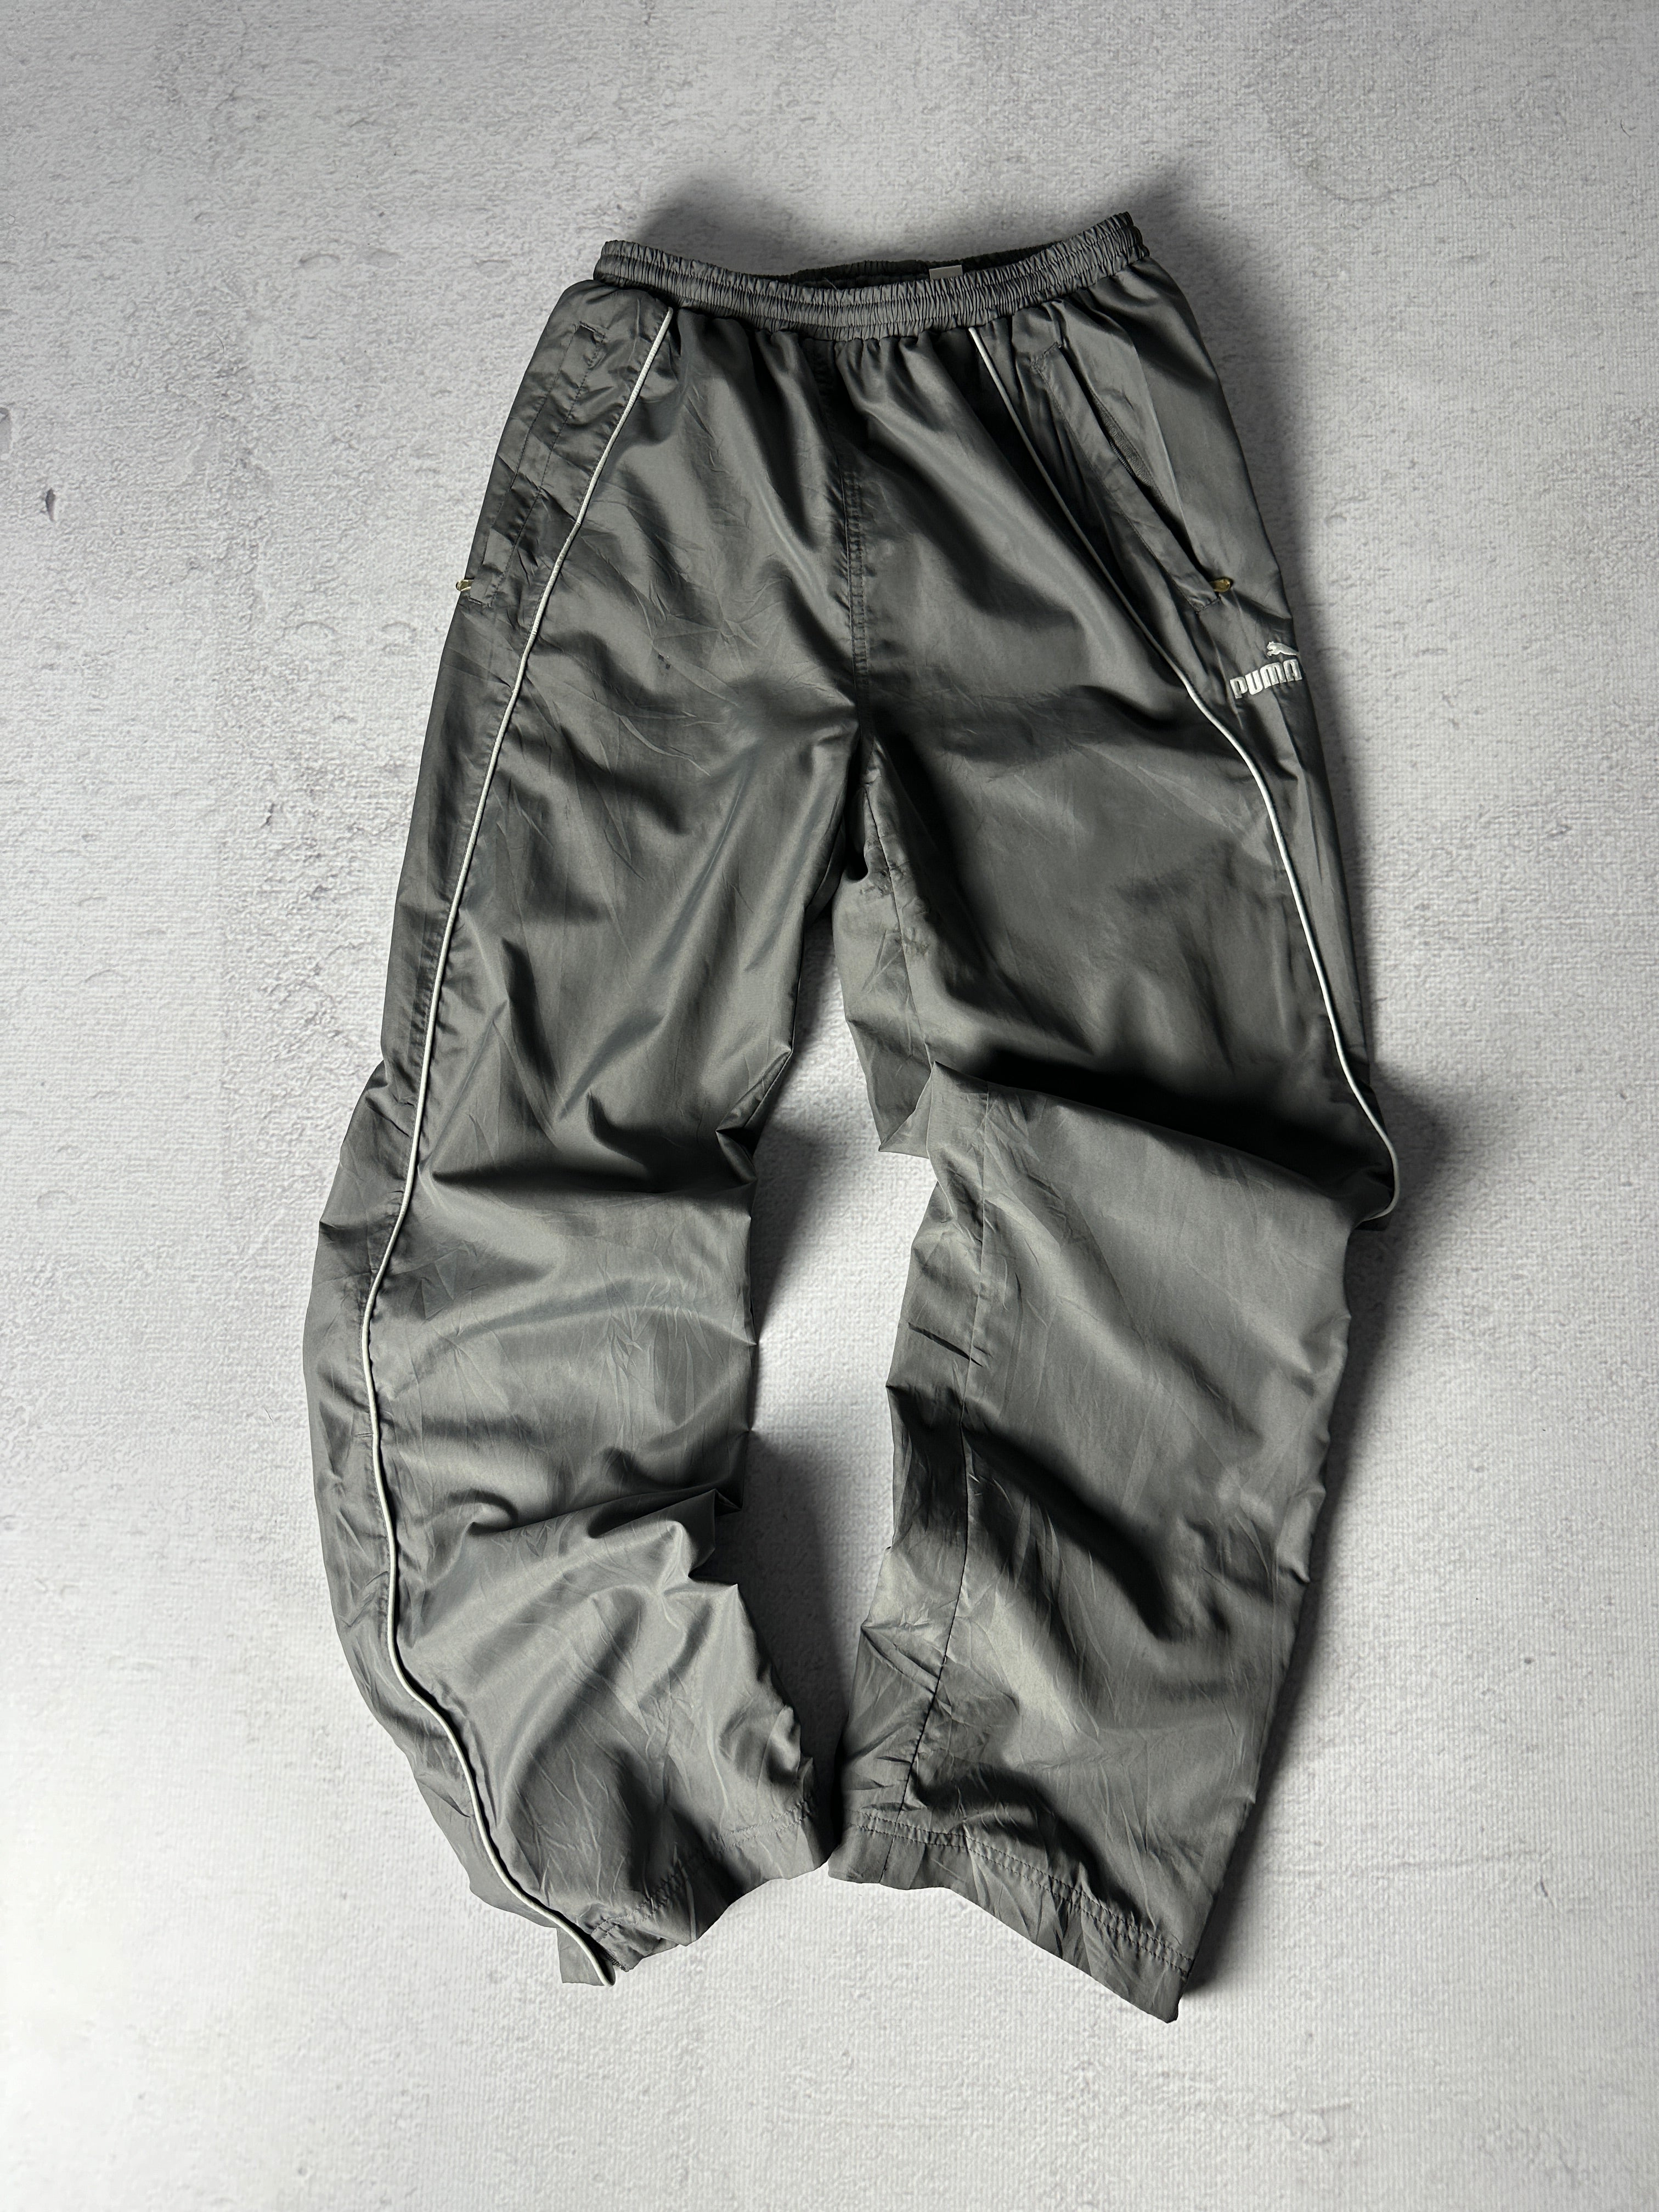 Vintage Puma Track Pants - Men's Medium